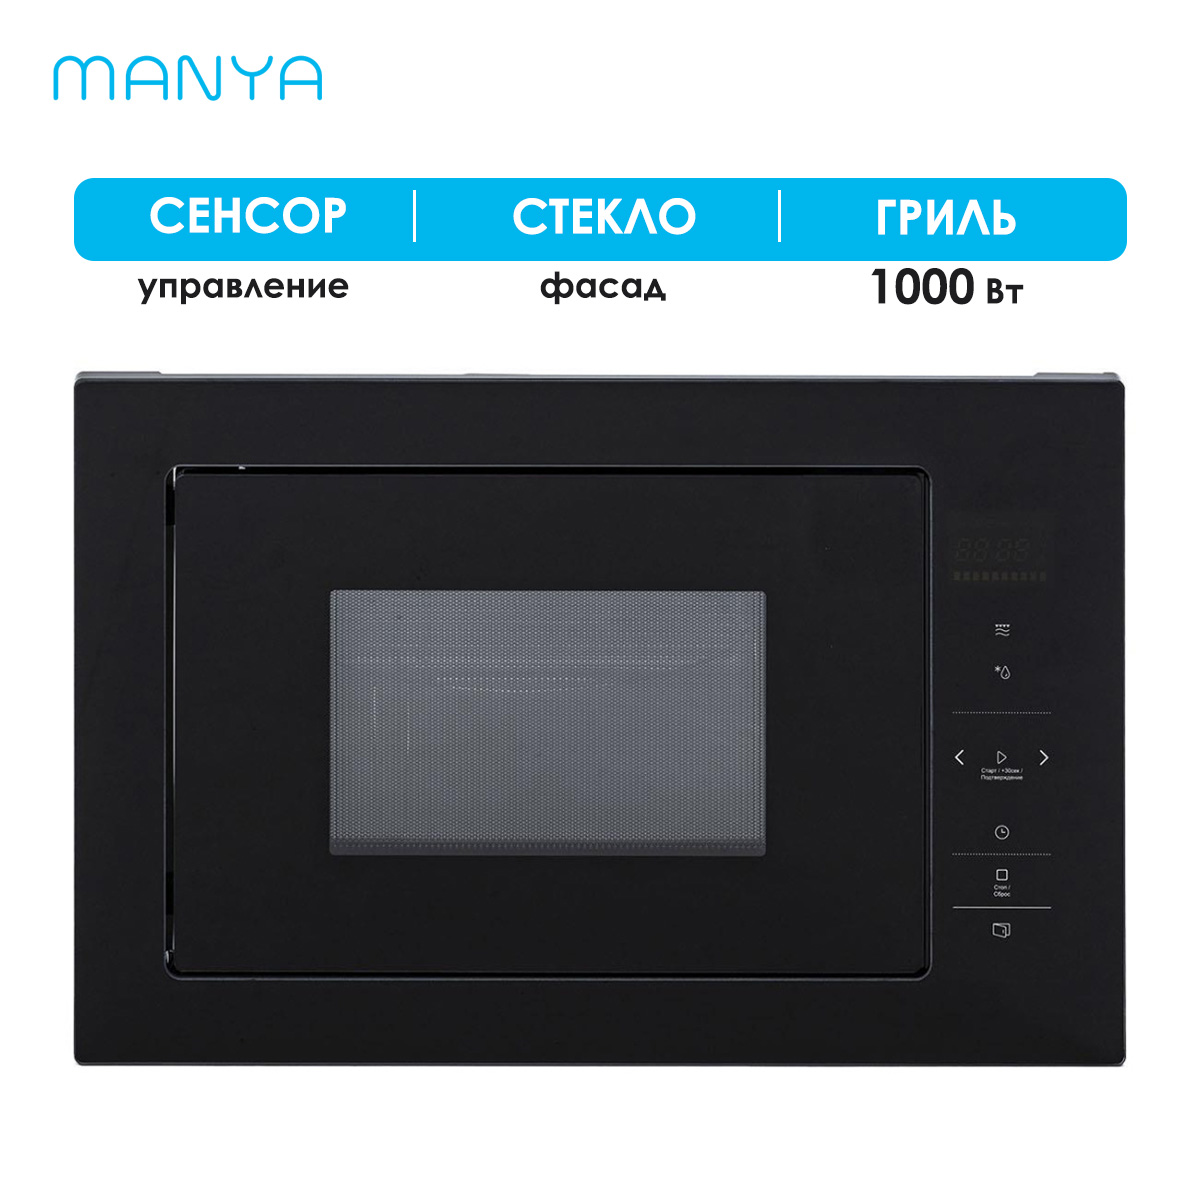 Встраиваемая микроволновая печь Manya BM2511BG черная встраиваемая микроволновая печь krona laune 60 s k черная